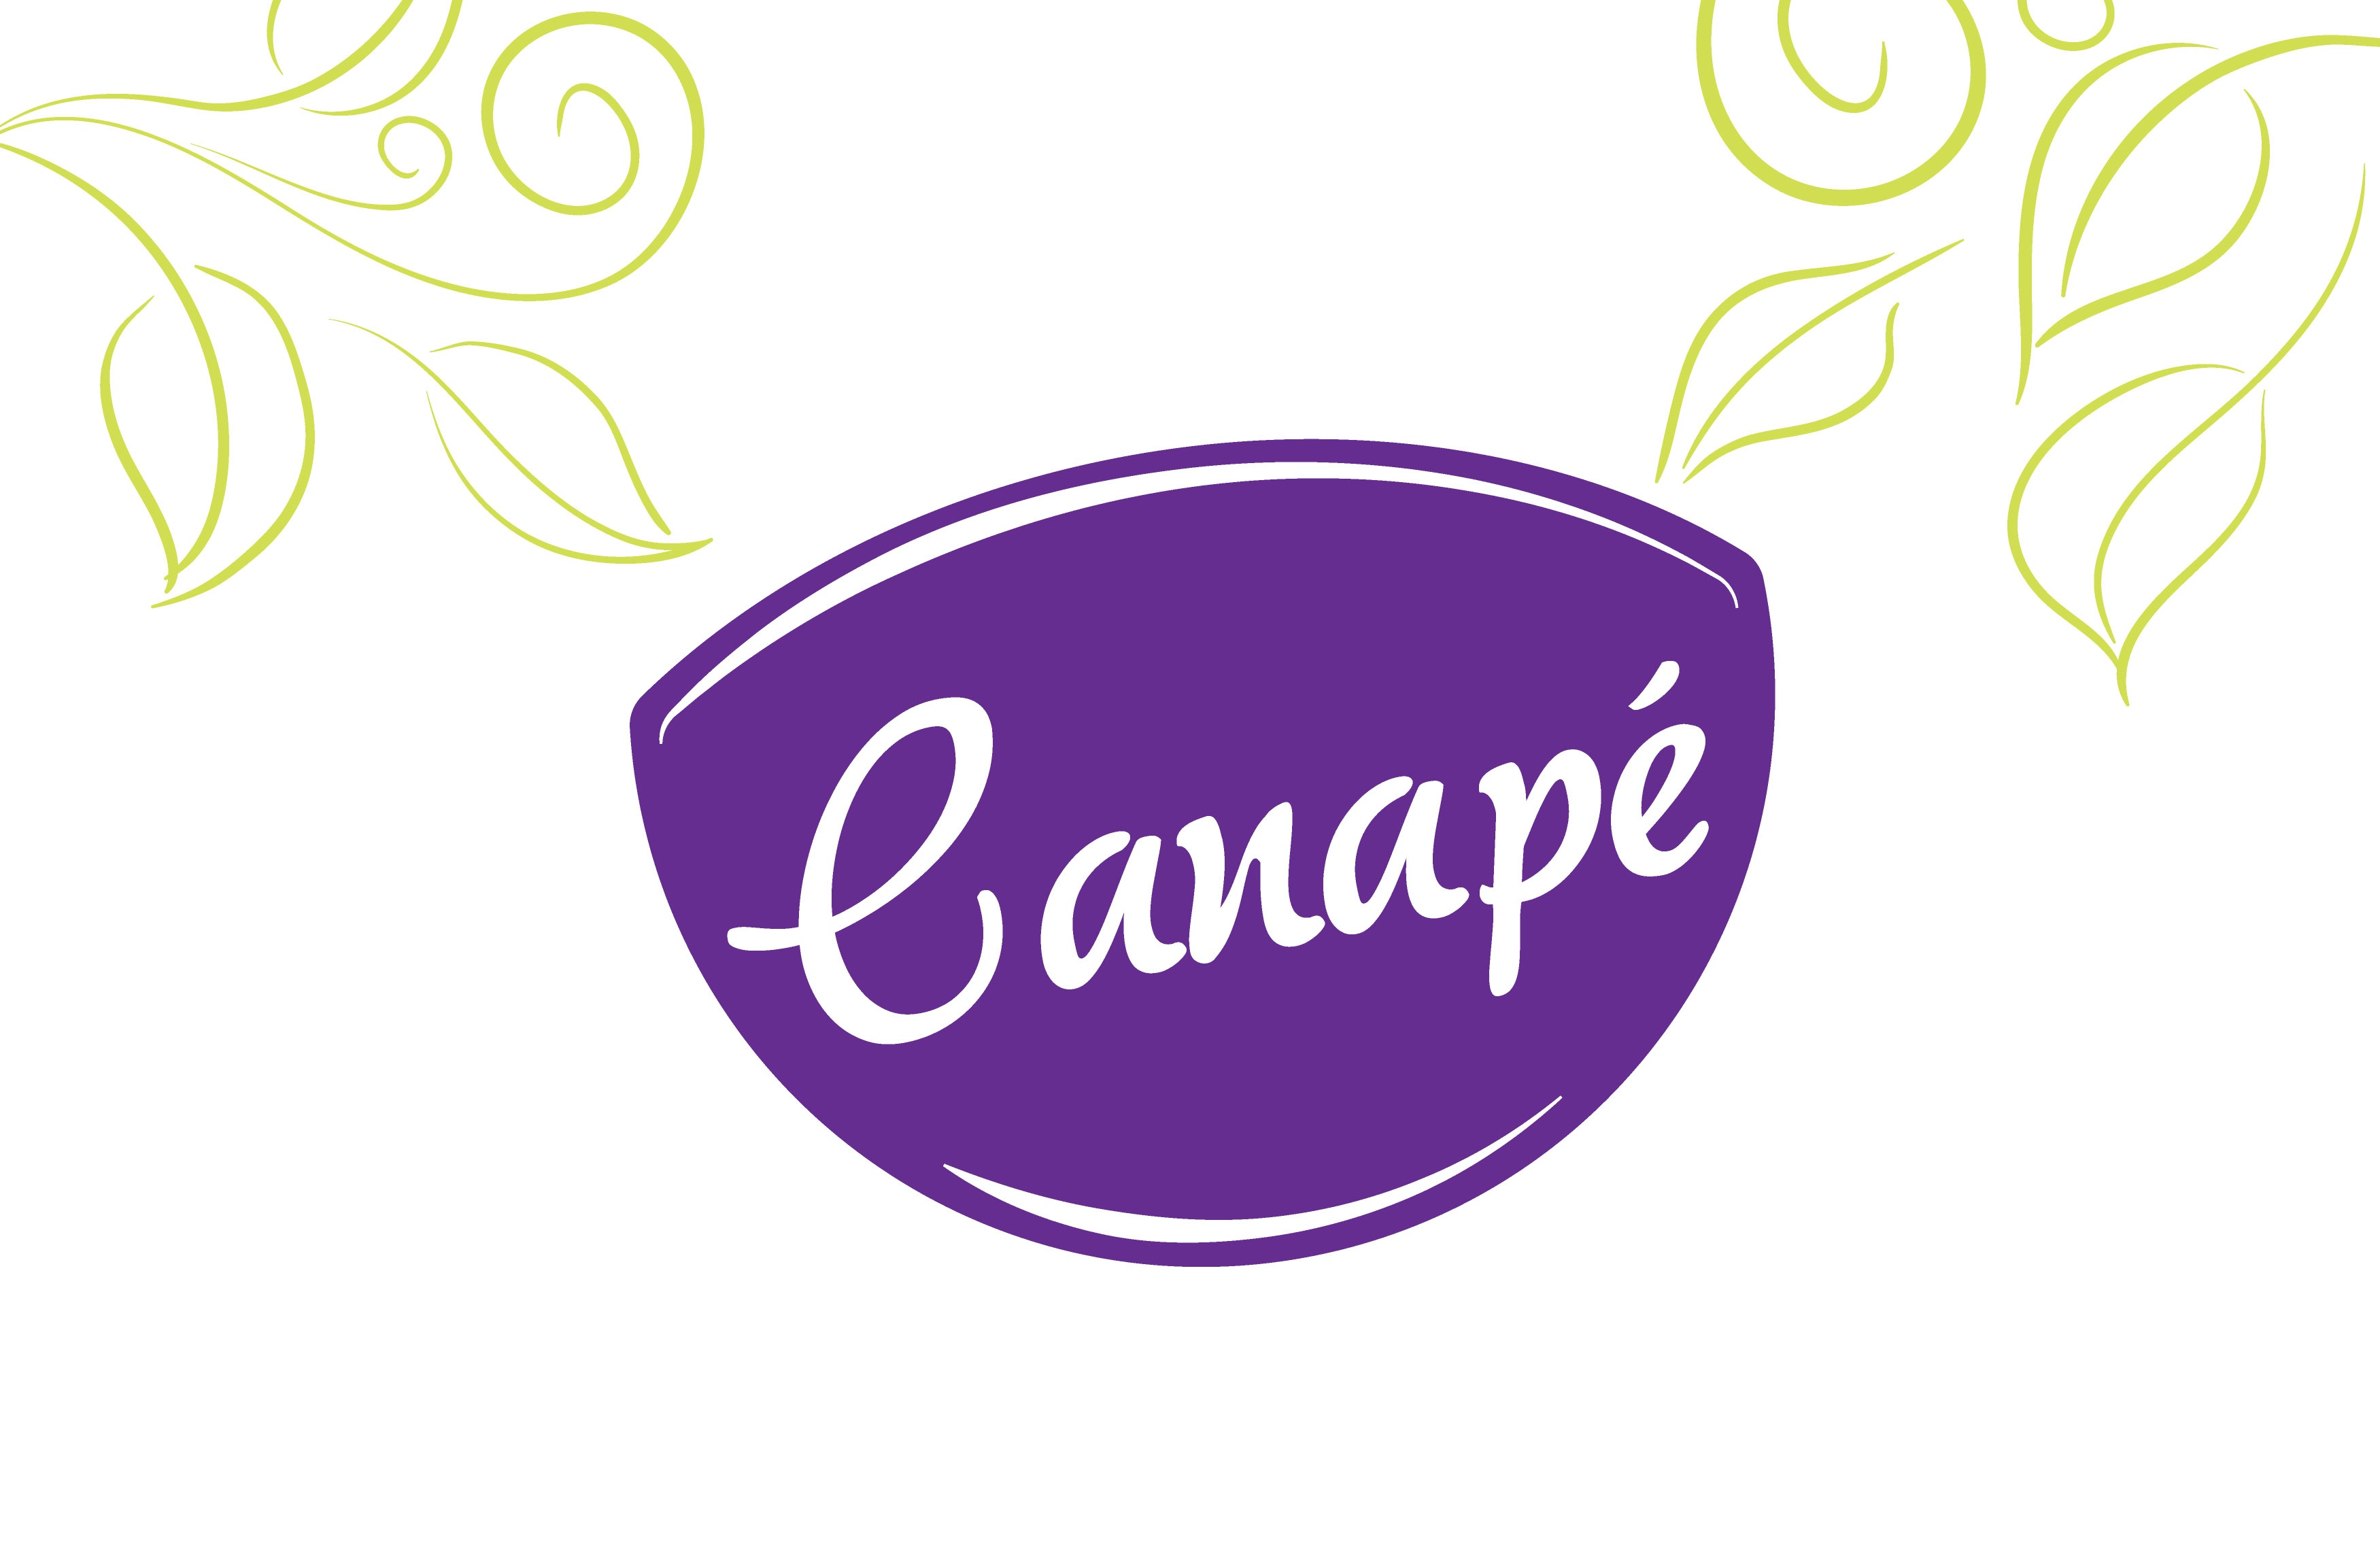 Diseño marca gráfica Canapé